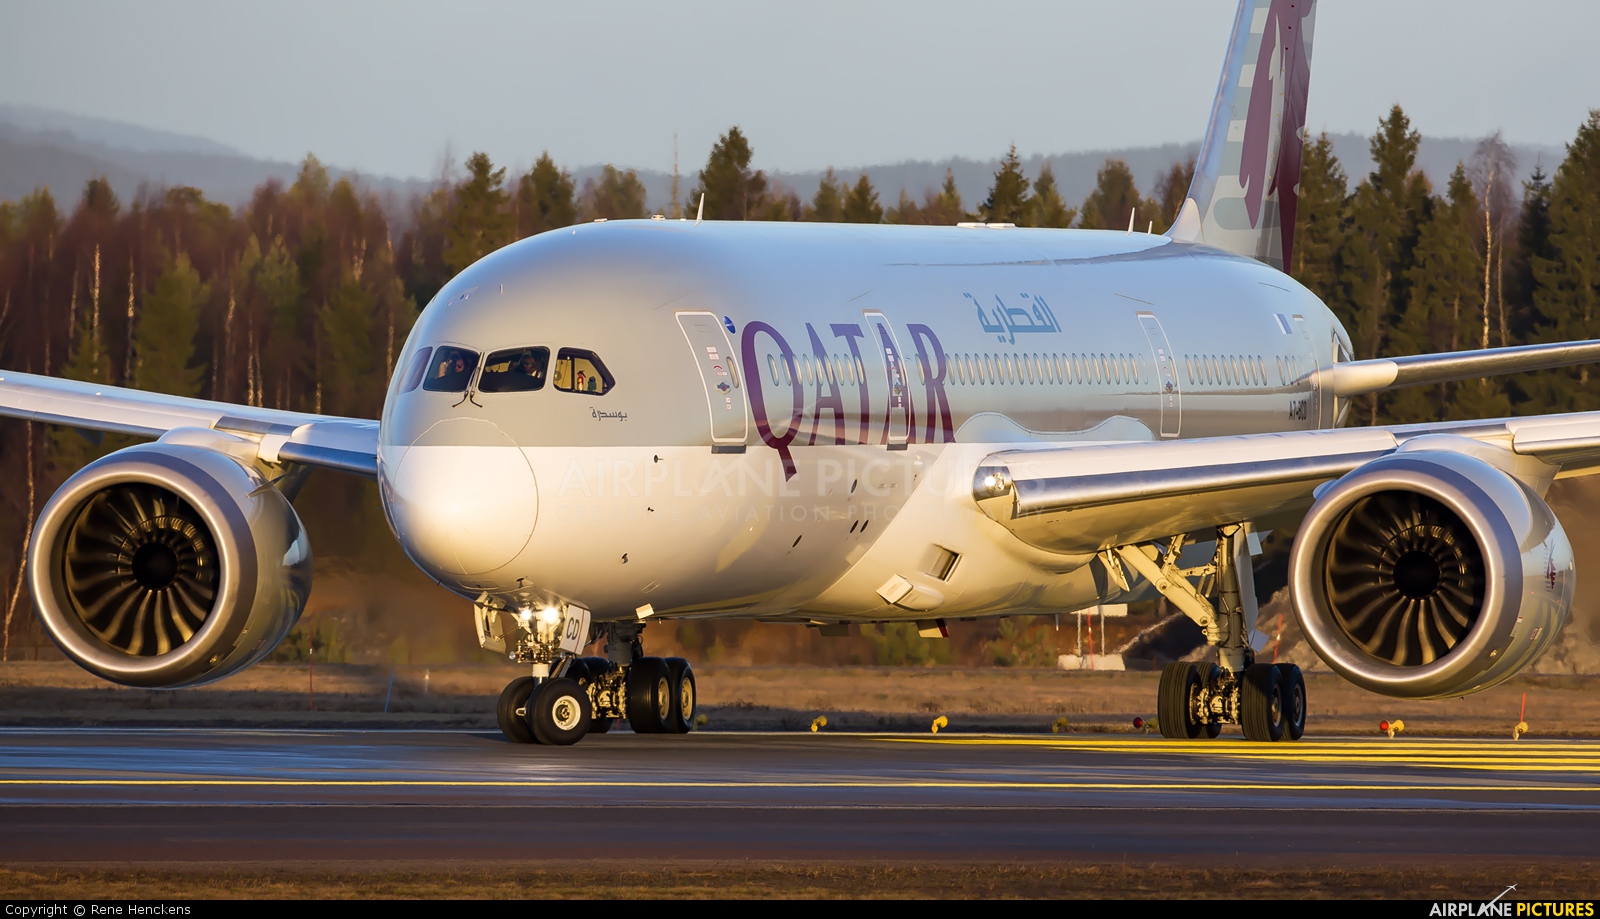 Qatar Airways A7-BCD aircraft at Oslo - Gardermoen